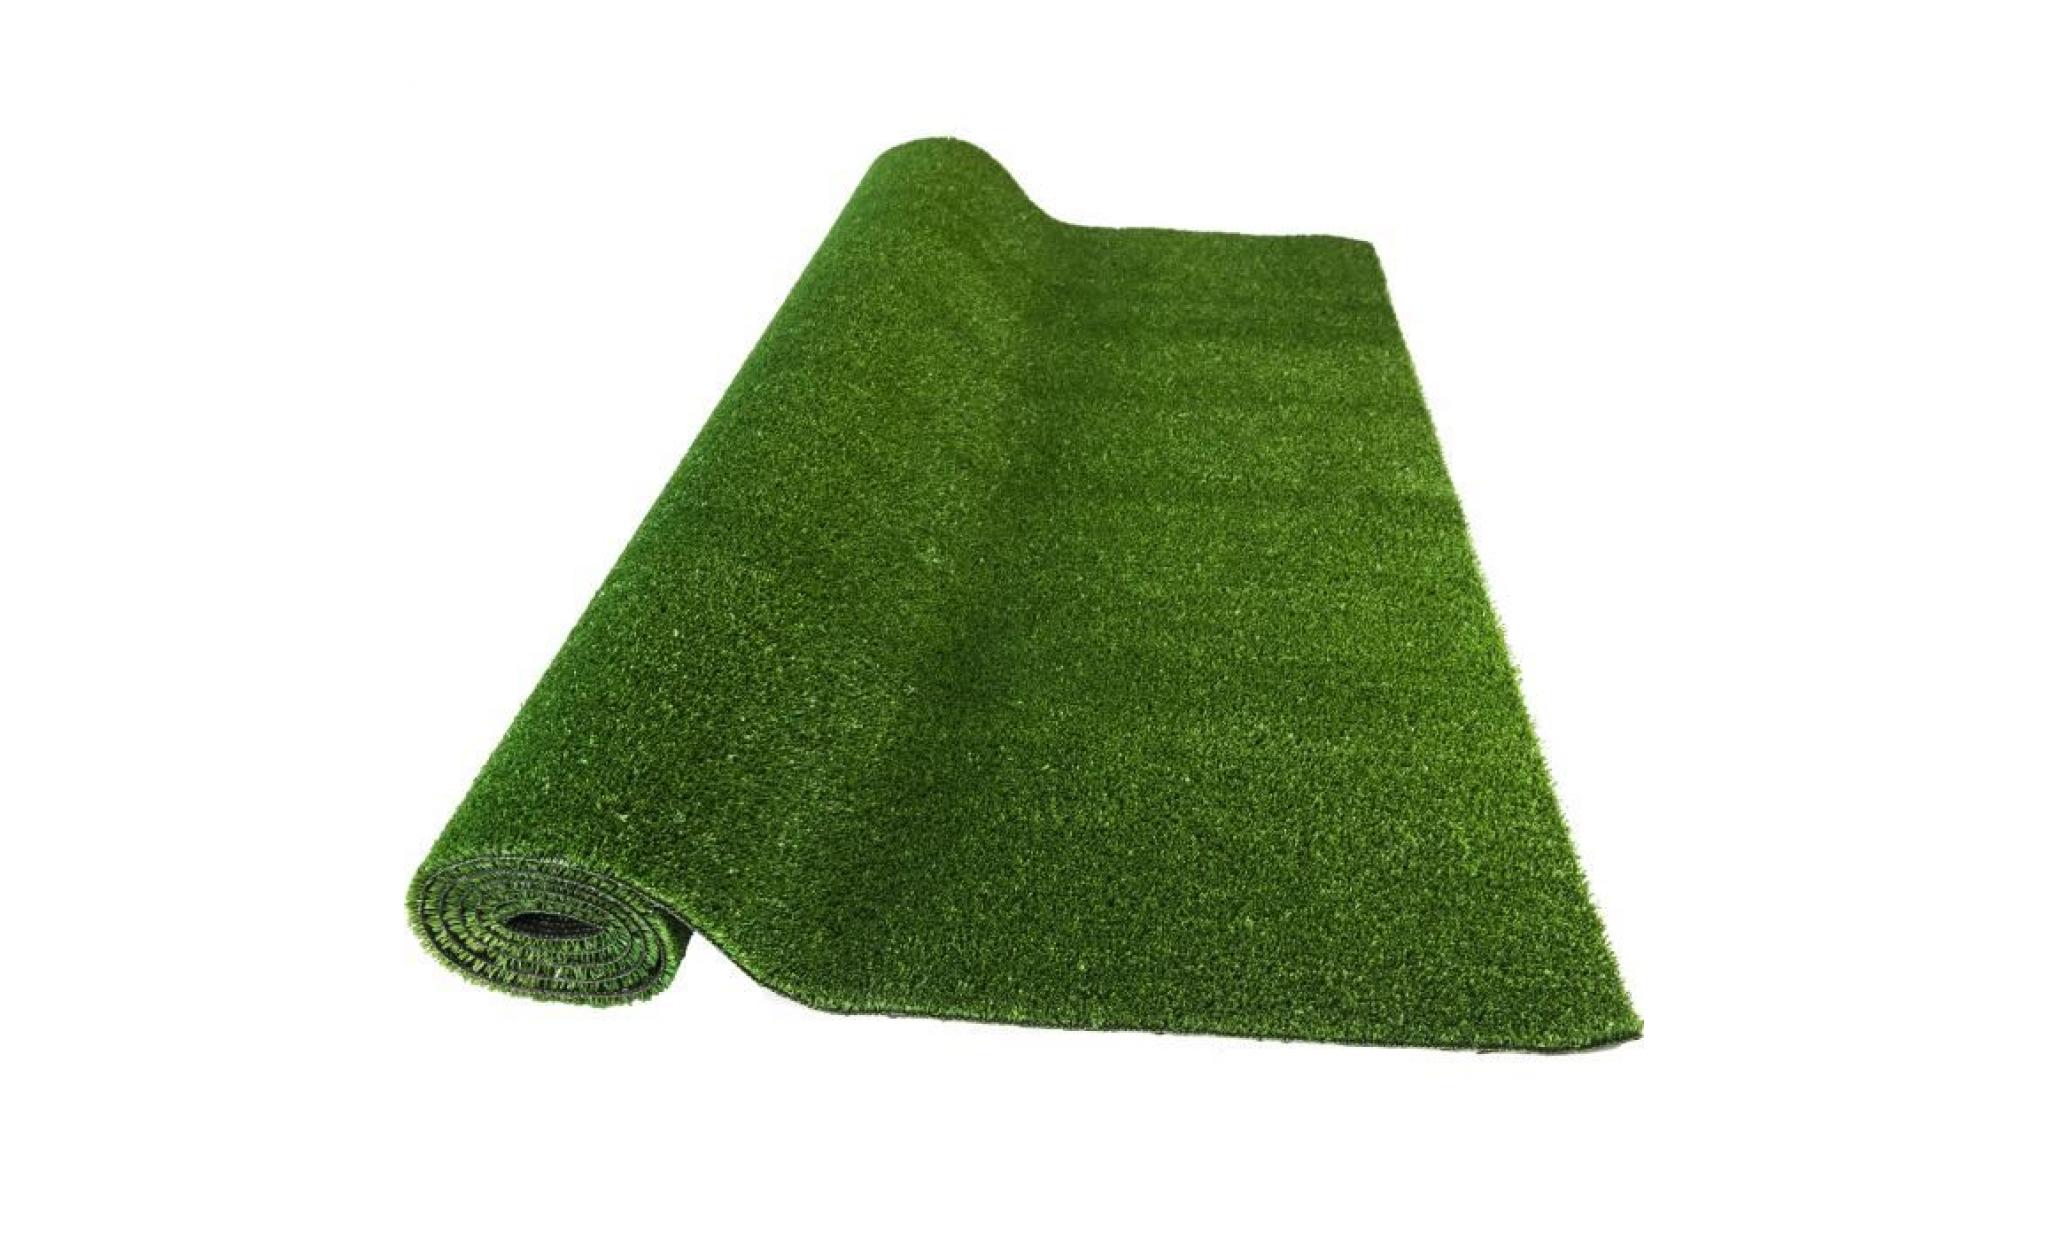 150 x 200 cm tapis de gazon synthetique. coloris vert disponible en plusieurs dimensions.